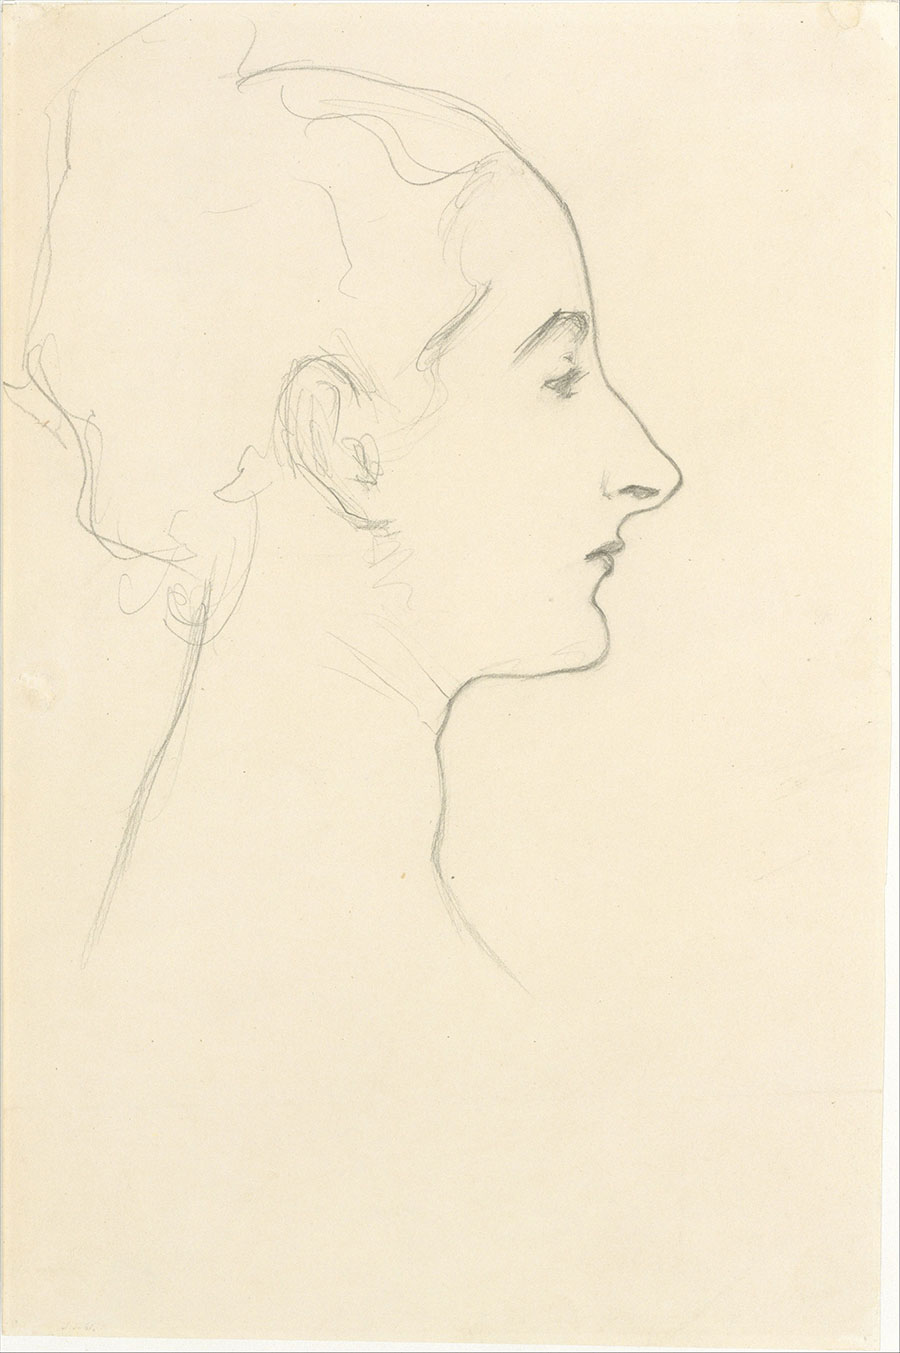 萨金特素描作品: 女人头像速写